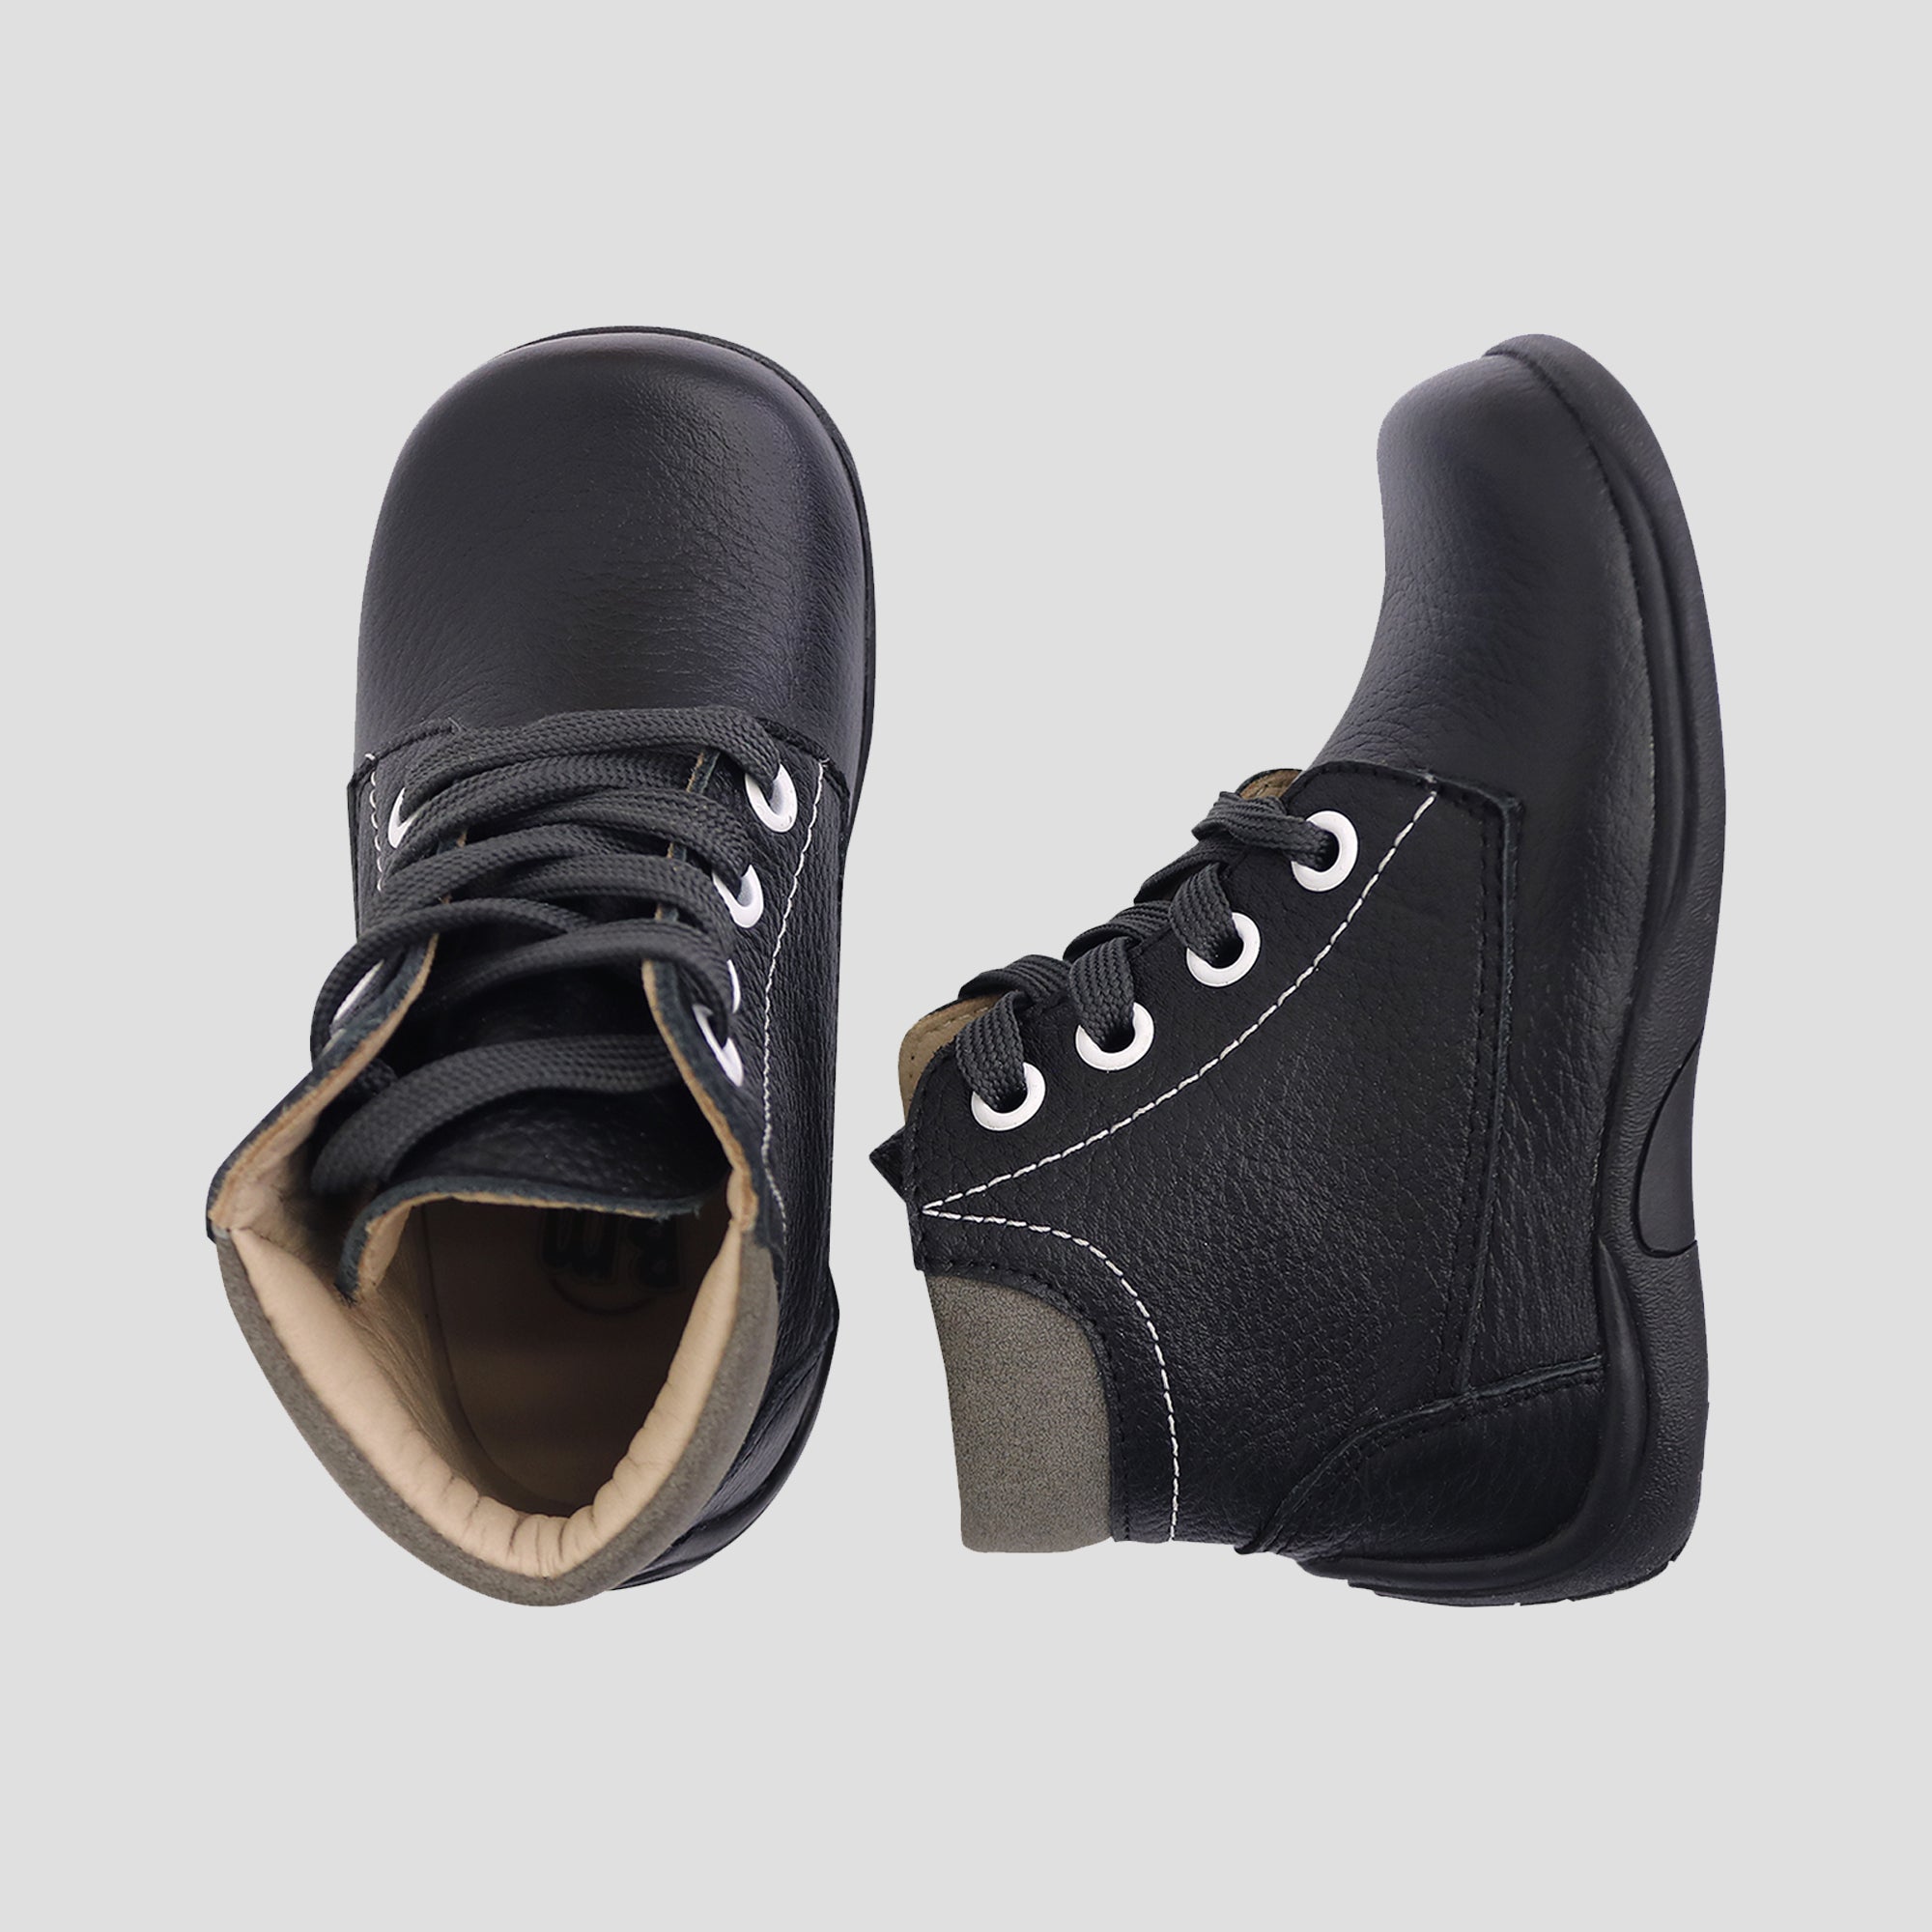 Zapato Pibe - 047 Negro T-19